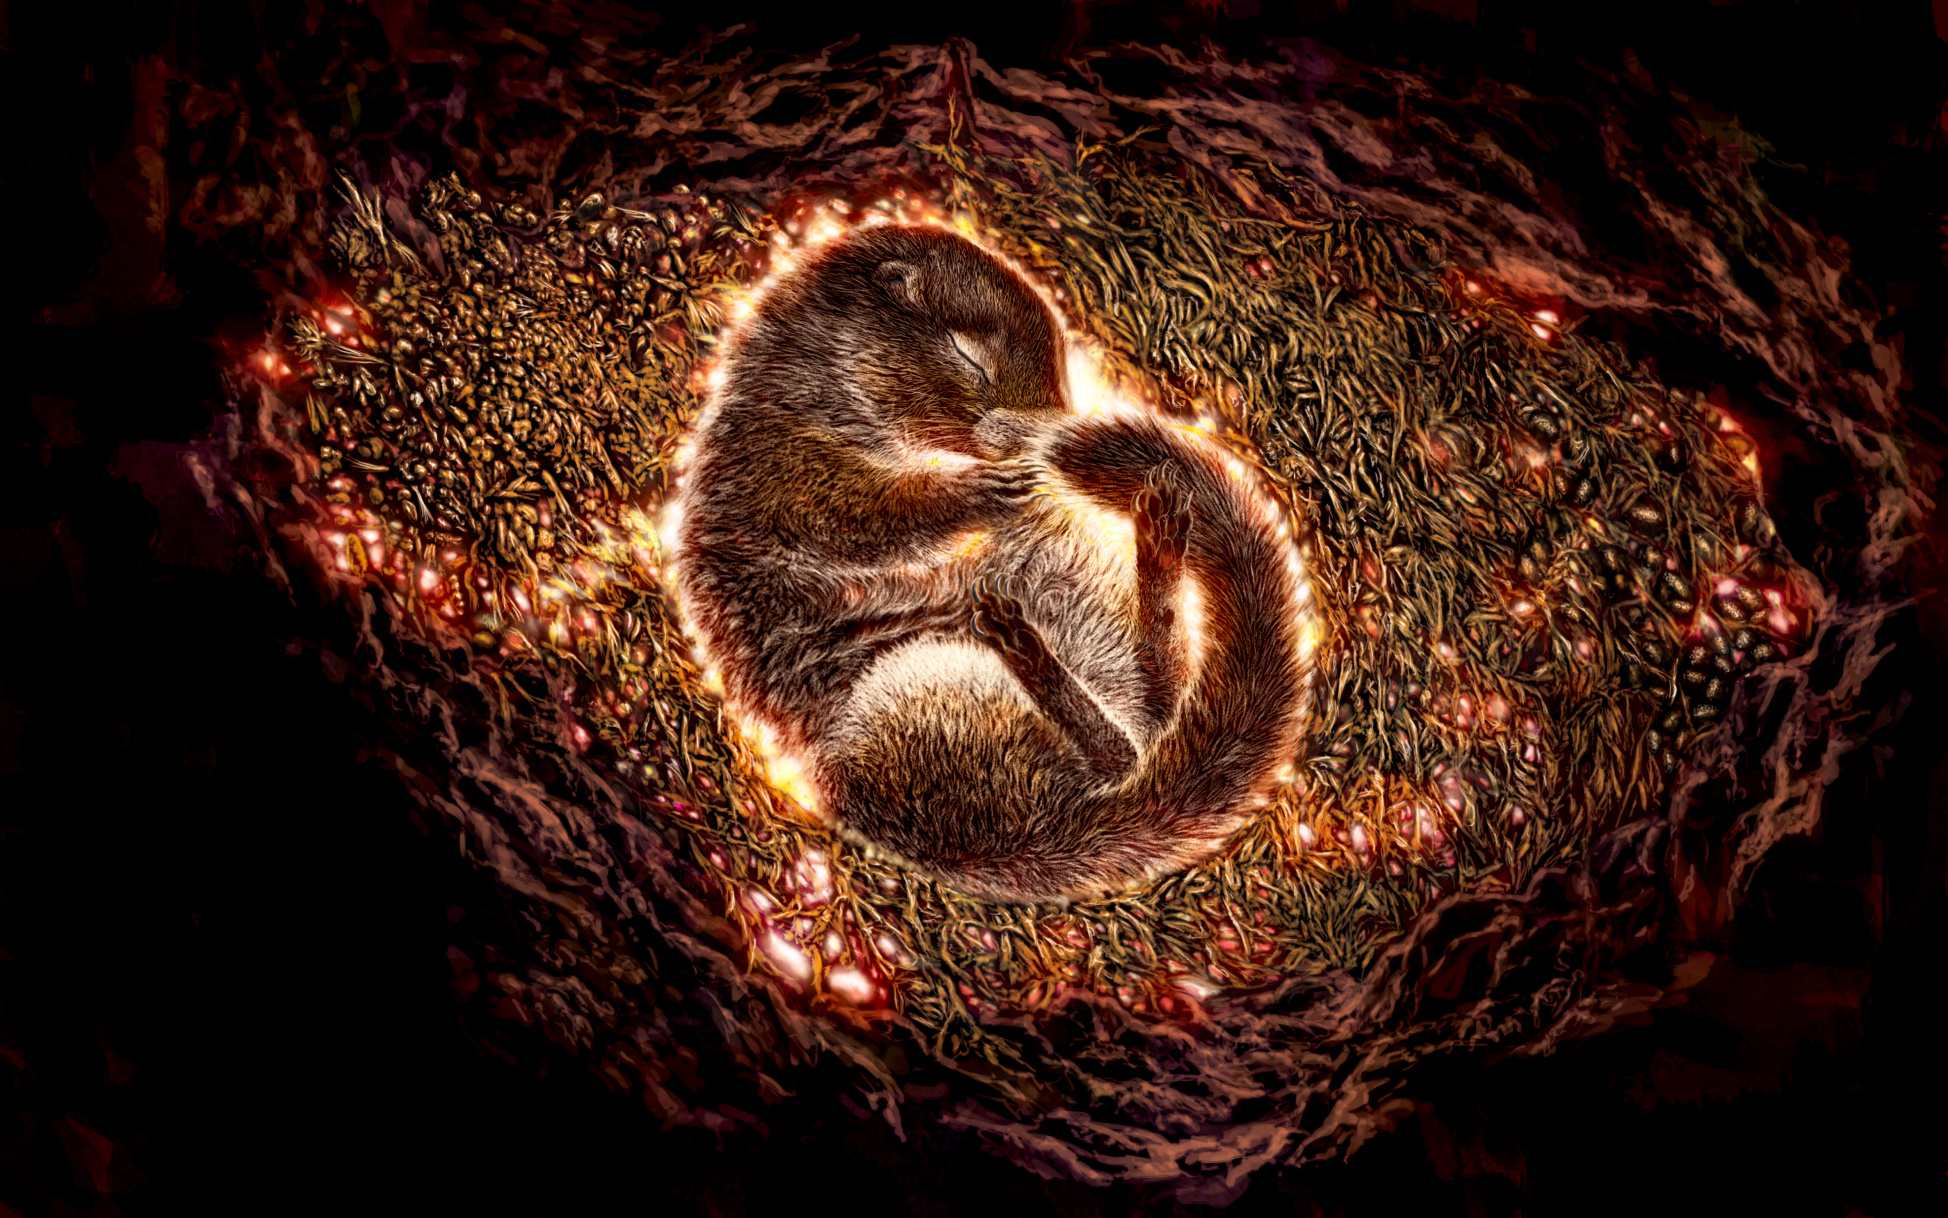 Une illustration de l'écureuil terrestre momifié recroquevillé dans son terrier pendant l'hibernation.